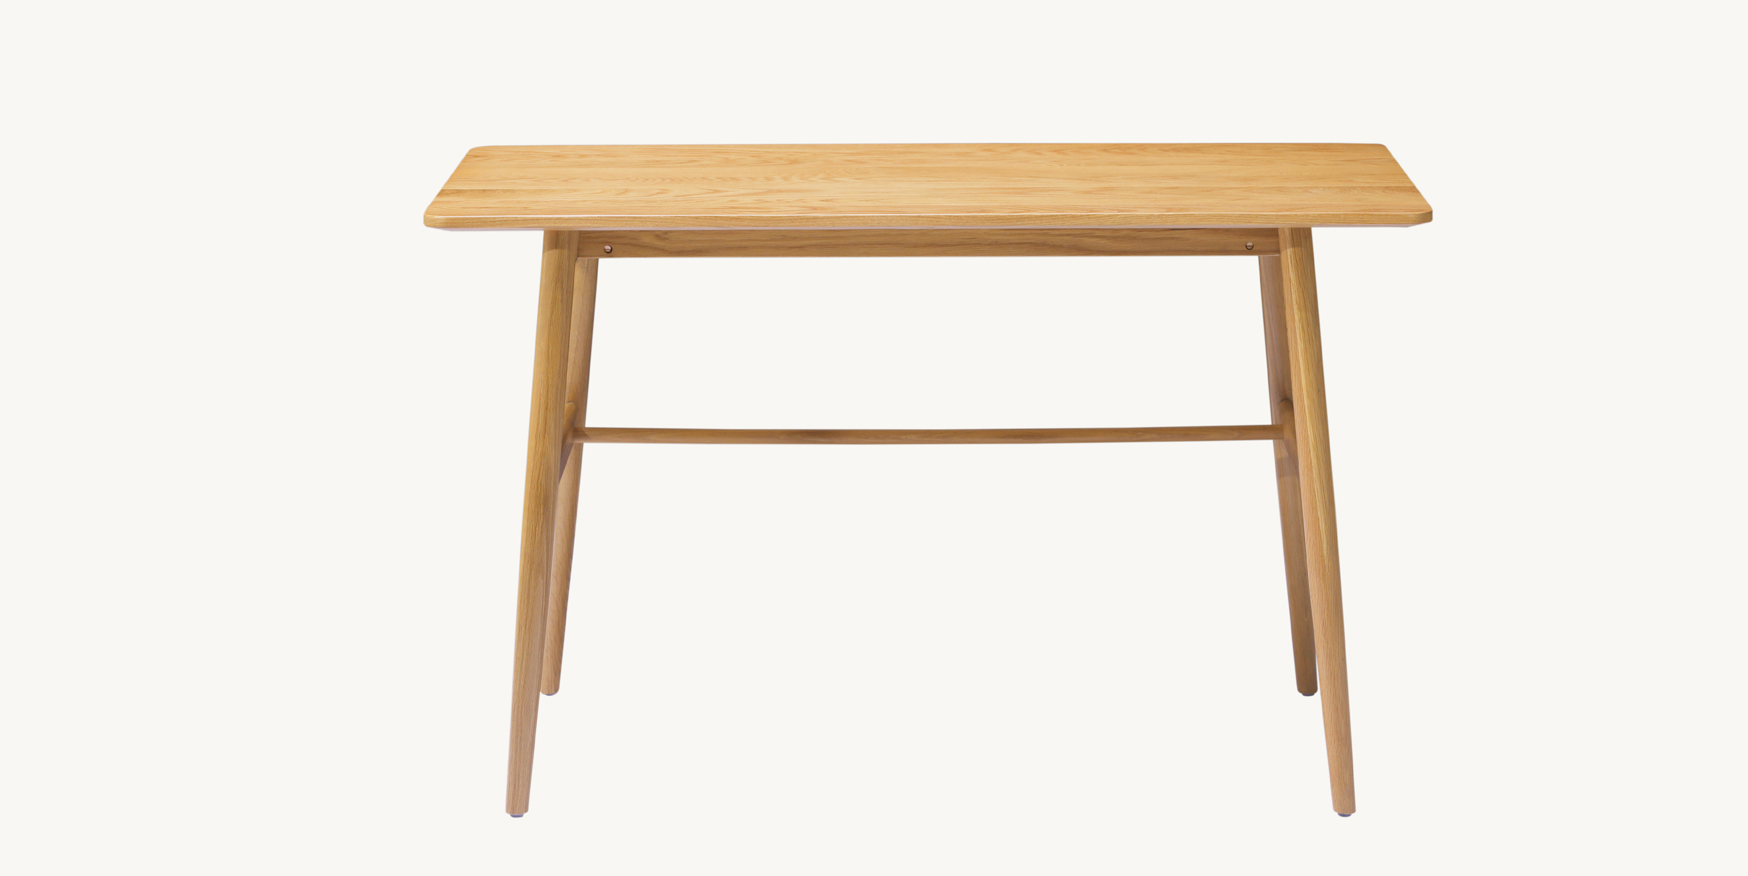 sz2 modern nordic wooden desk solid wood desk2